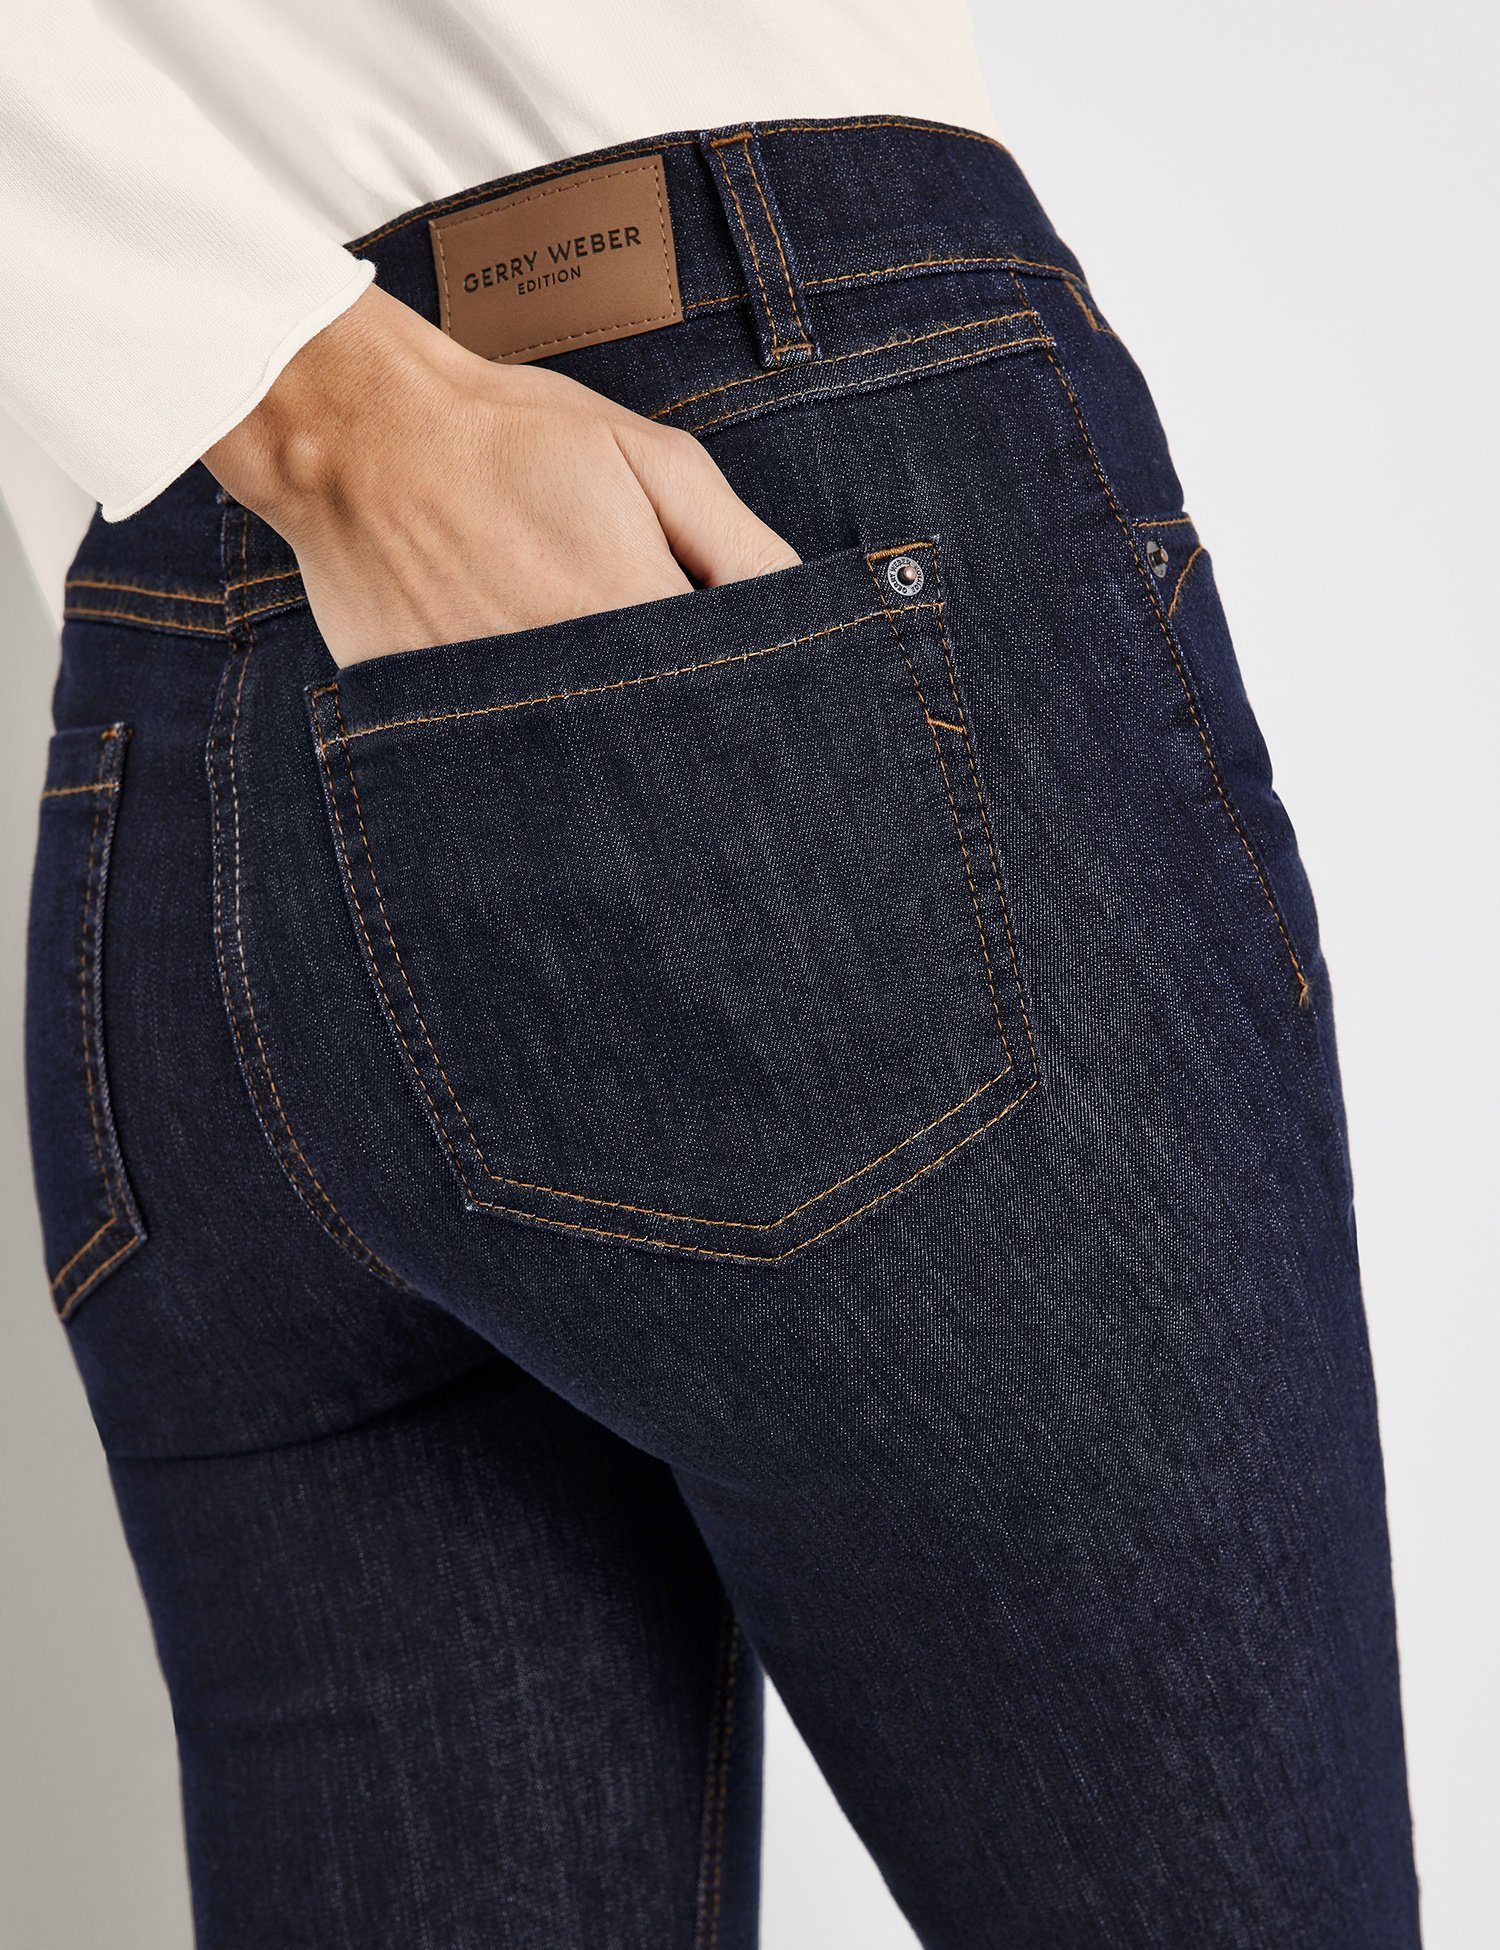 Regular-fit-Jeans WEBER GERRY Hose dark denim Jeans